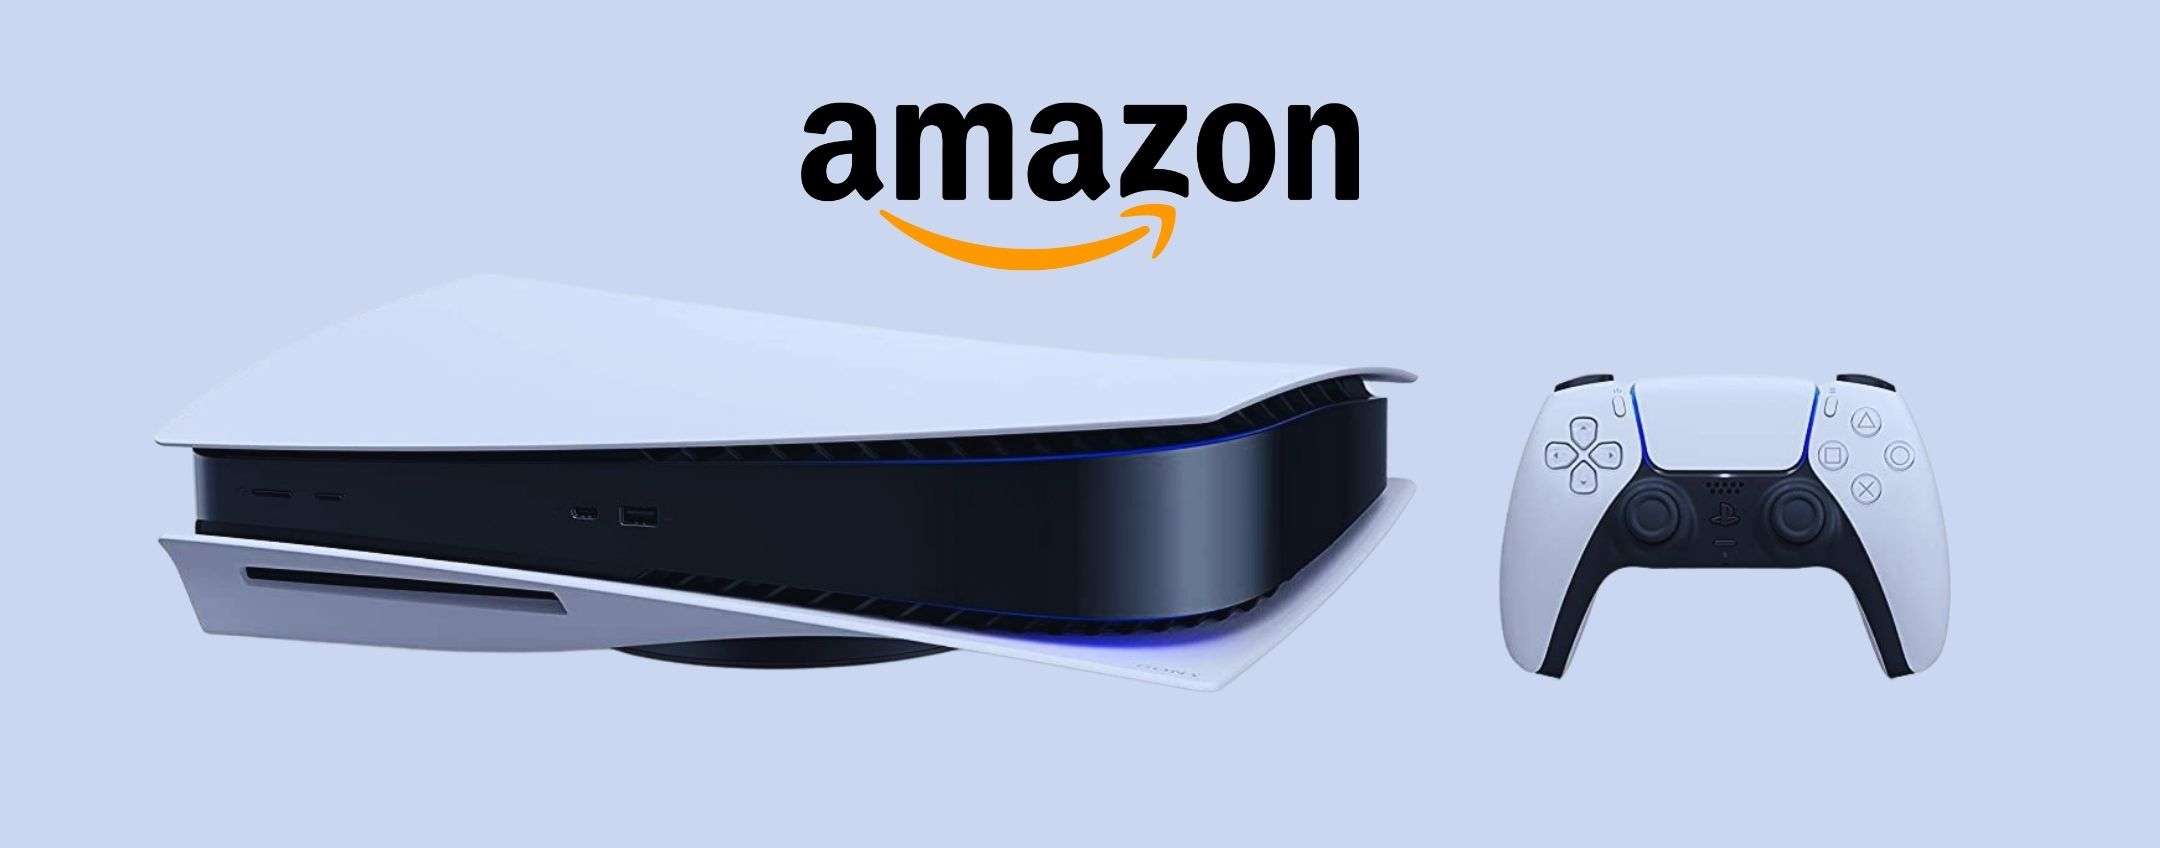 PS5: Amazon ci svela il trucco per acquistarla più facilmente!